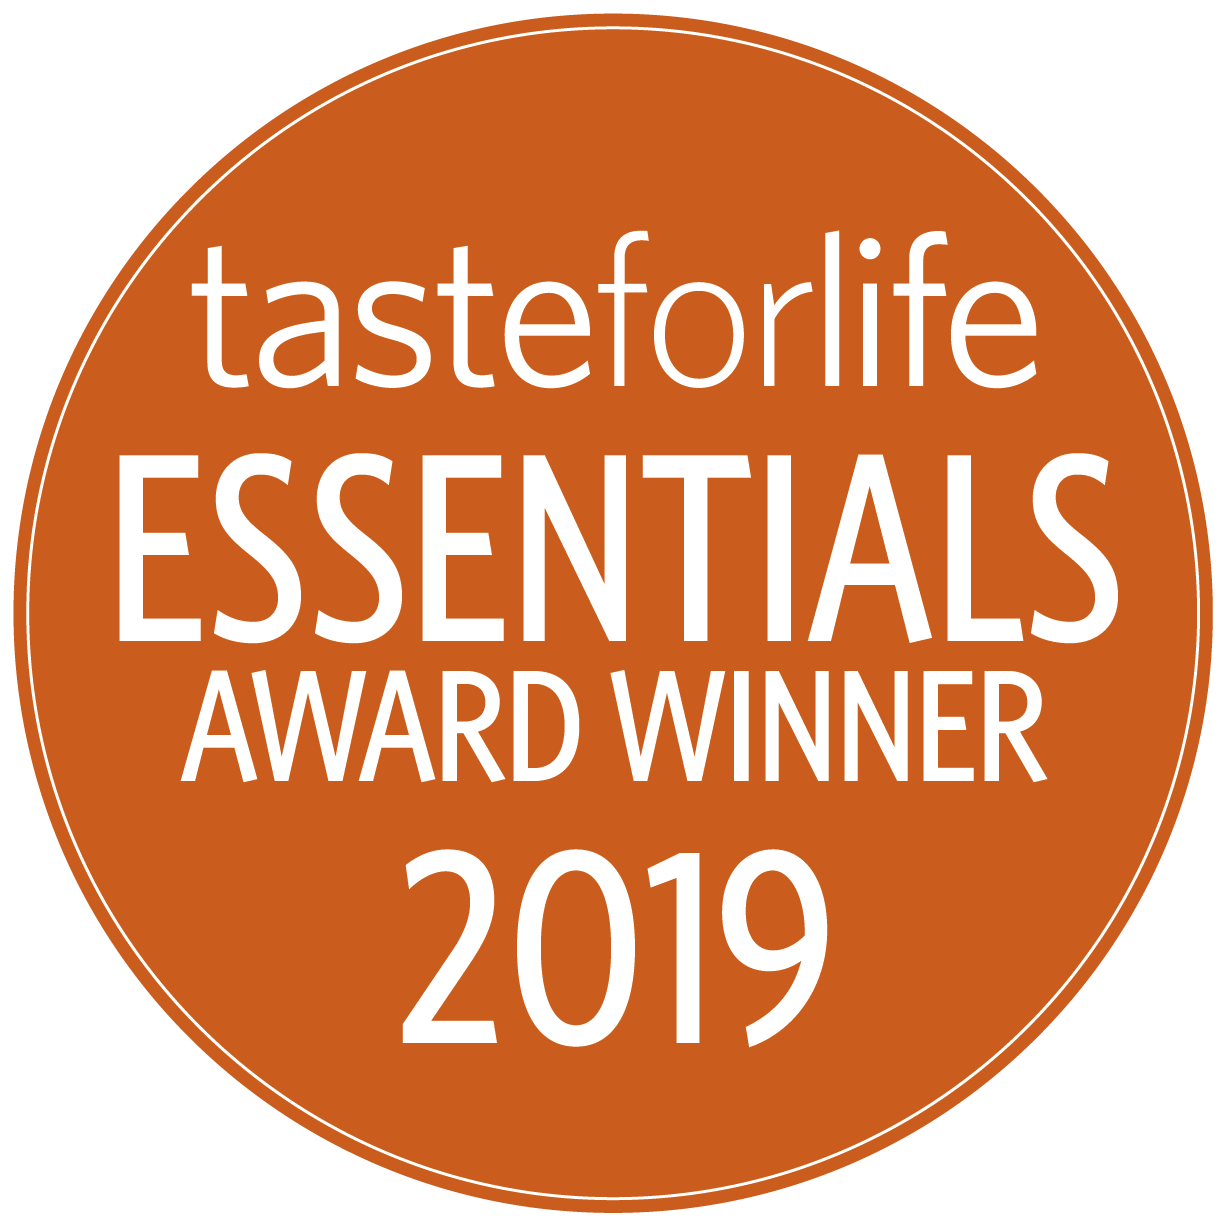 Taste For Life Essentials Award Winner 2019